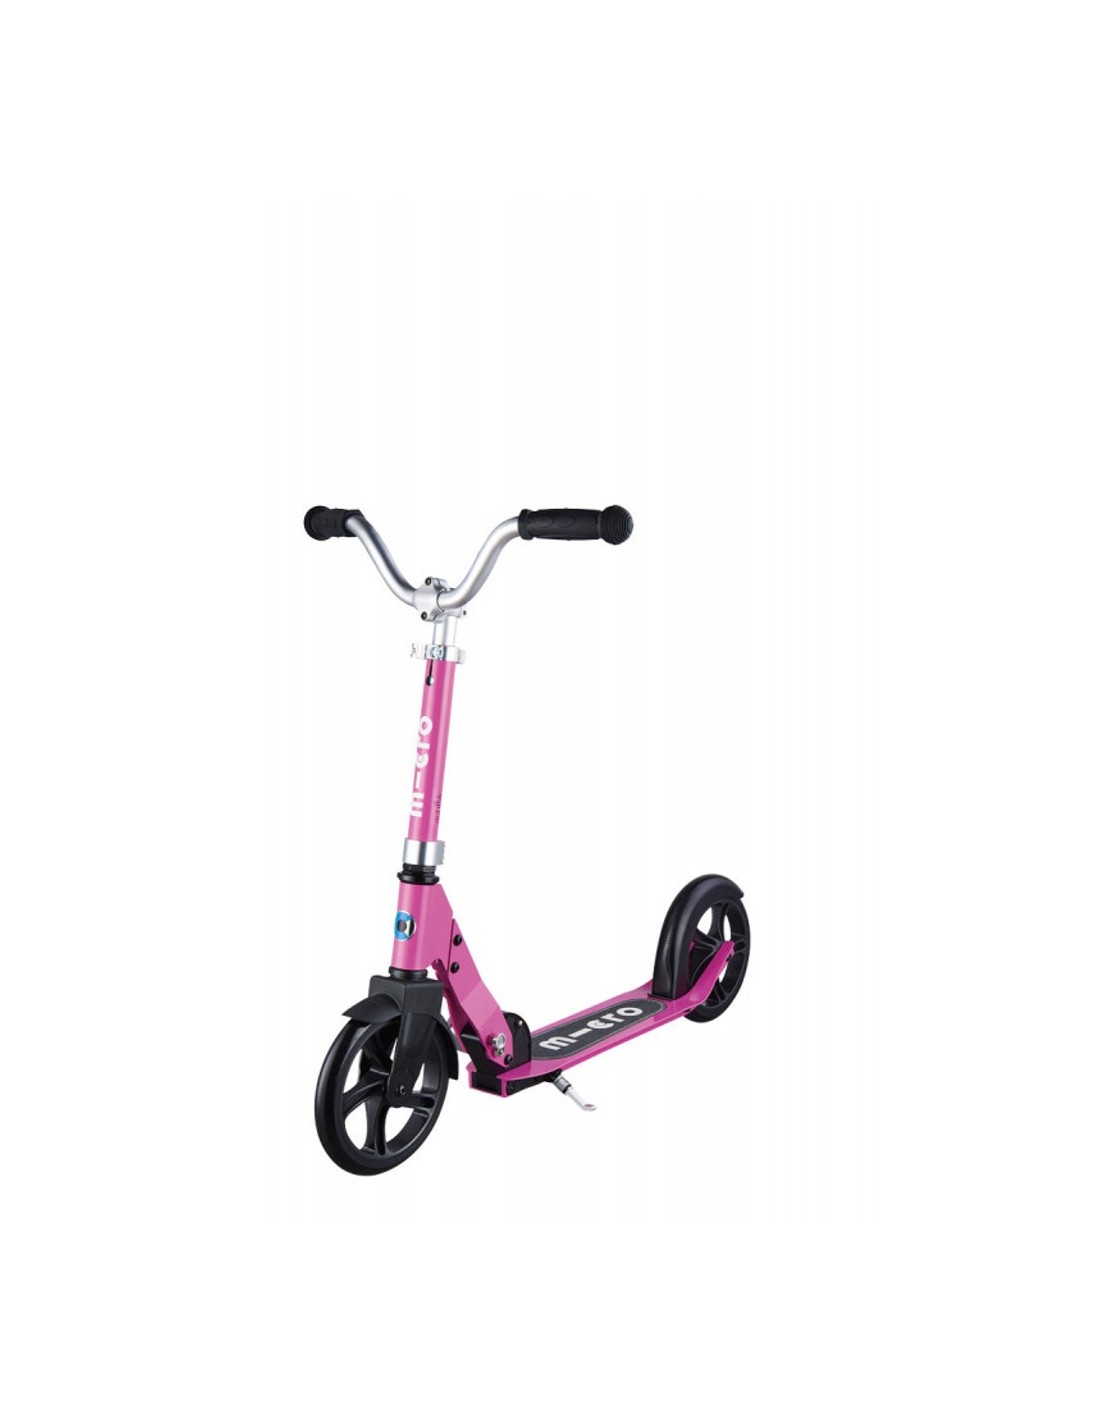 Micro Scooter Cruiser pink, für 5-10 Jahre, faltbar, 200mm Rollen, bis 100kg Belastbarkeit, ideal für Schulweg und Freizeit Scooterreifen - PU Reifen, Scooterart - Scooter, Scooterfarbe - Pink, von Micro Scooter